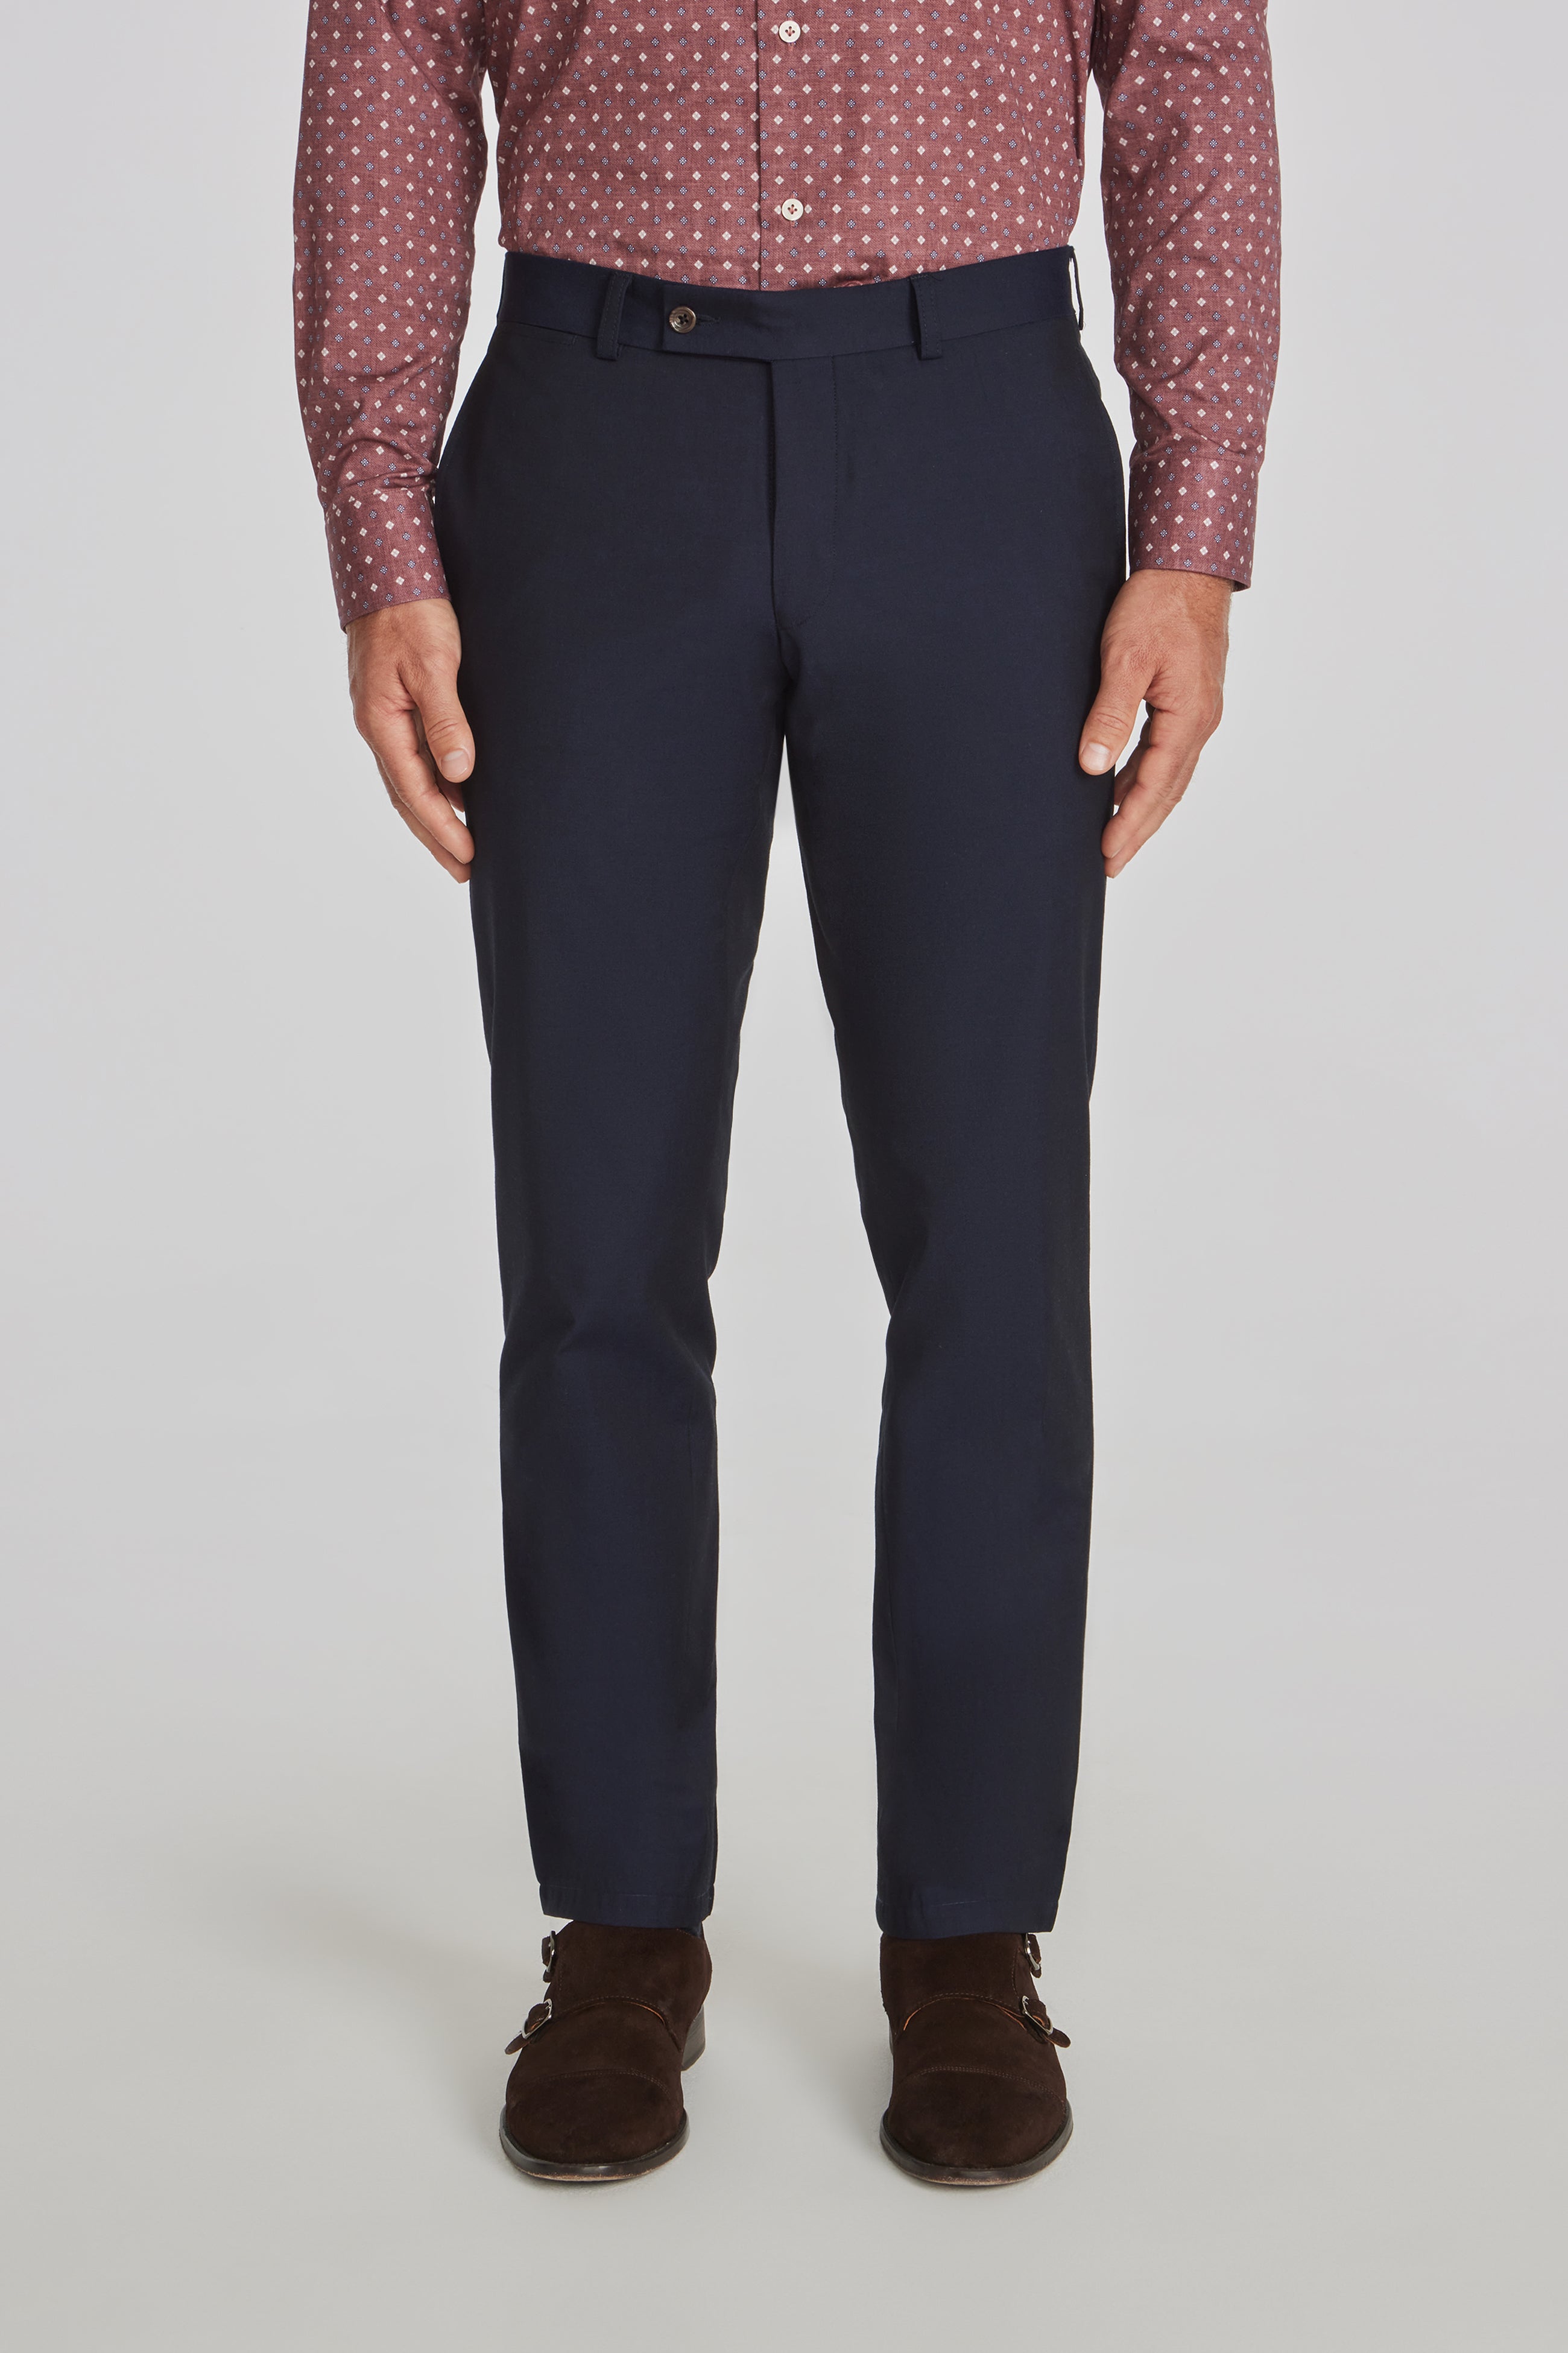 Pronto Uomo Modern Fit Suit Separates Dress Pants, Men's Pants